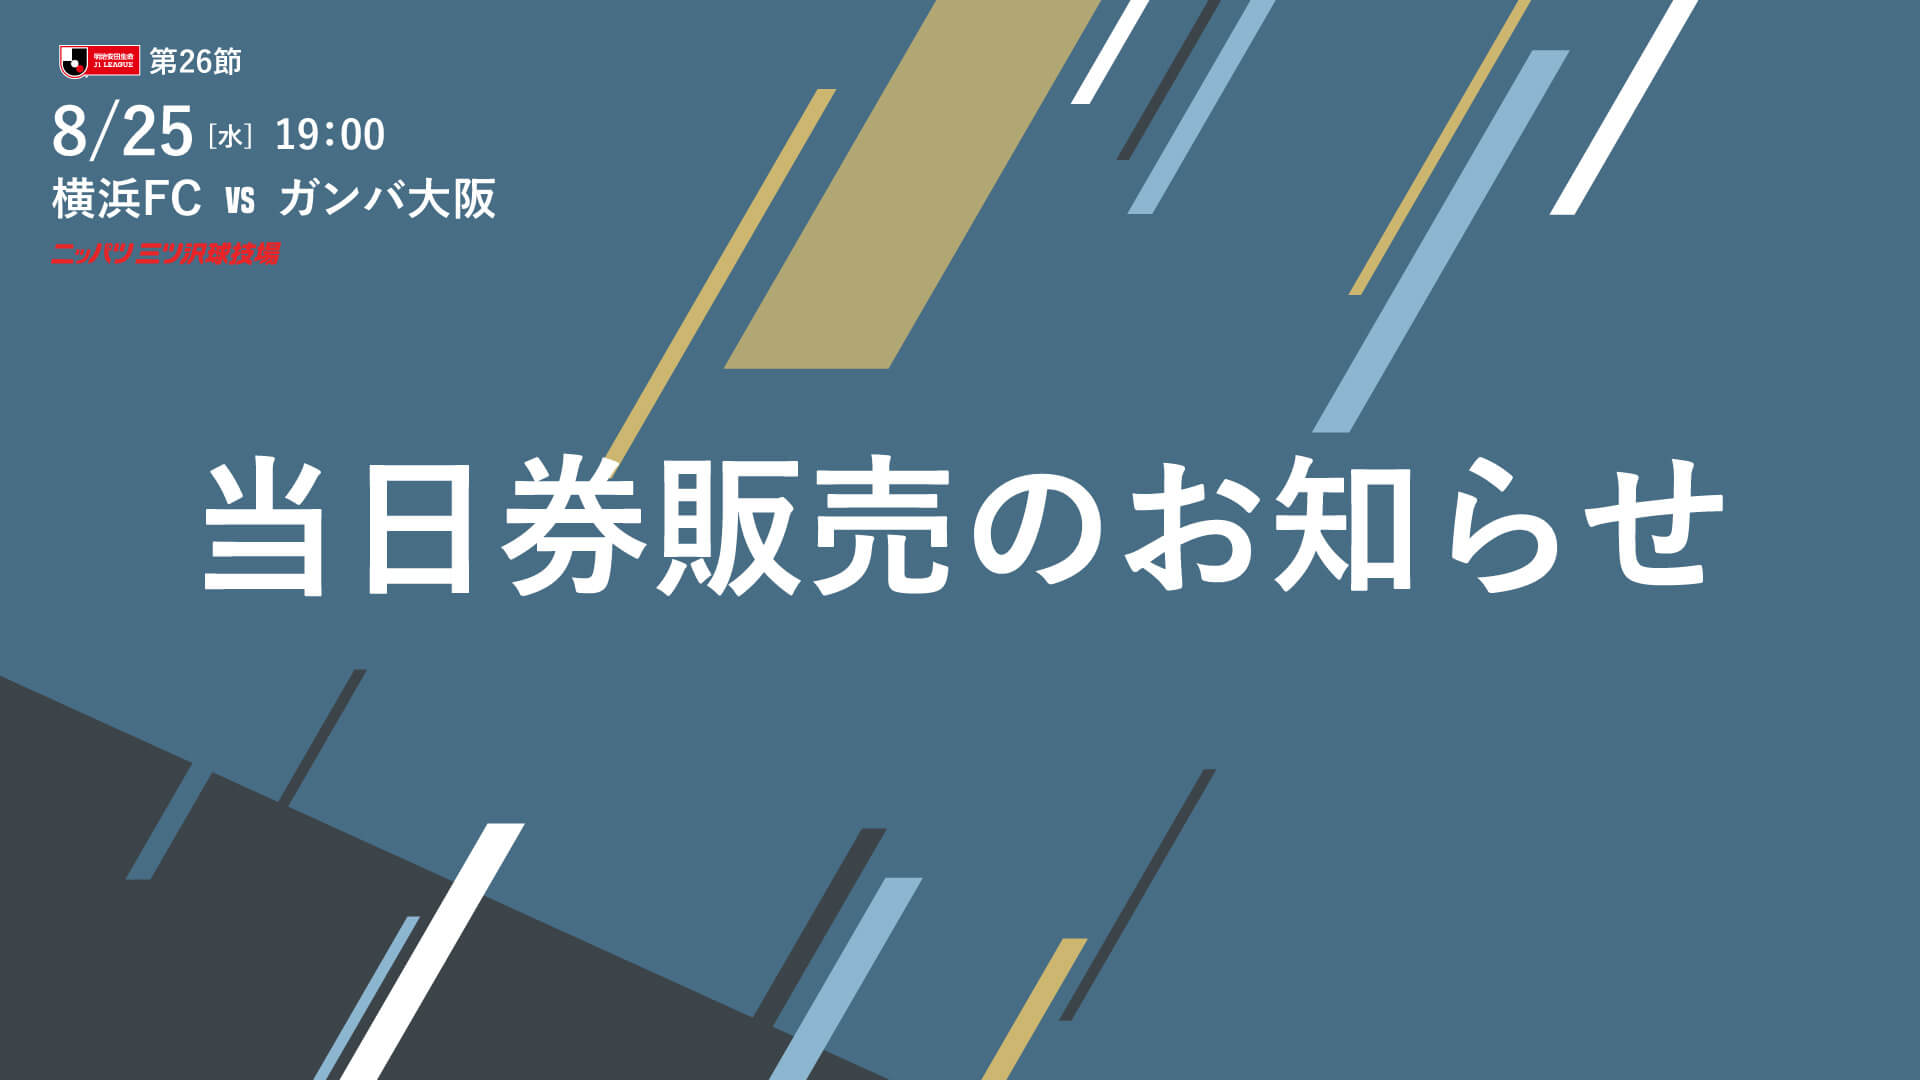 8 25 水 ガンバ大阪戦 当日券販売に関するご案内 横浜fcオフィシャルウェブサイト